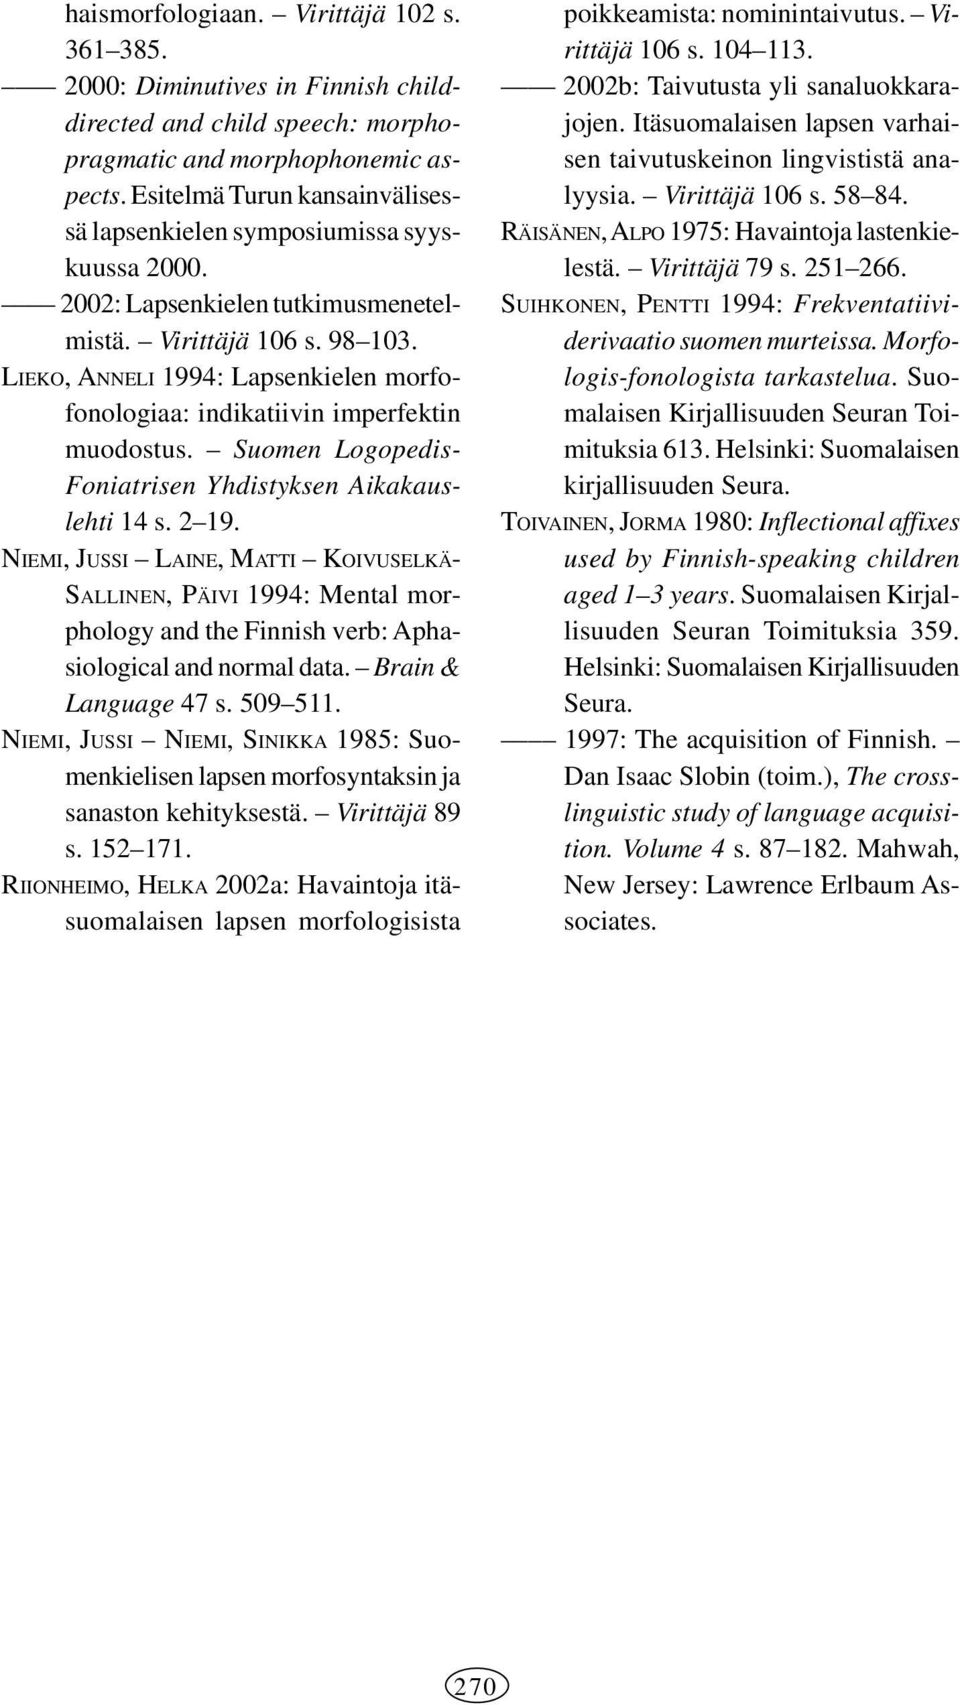 LIEKO, ANNELI 1994: Lapsenkielen morfofonologiaa: indikatiivin imperfektin muodostus. Suomen Logopedis- Foniatrisen Yhdistyksen Aikakauslehti 14 s. 2 19.